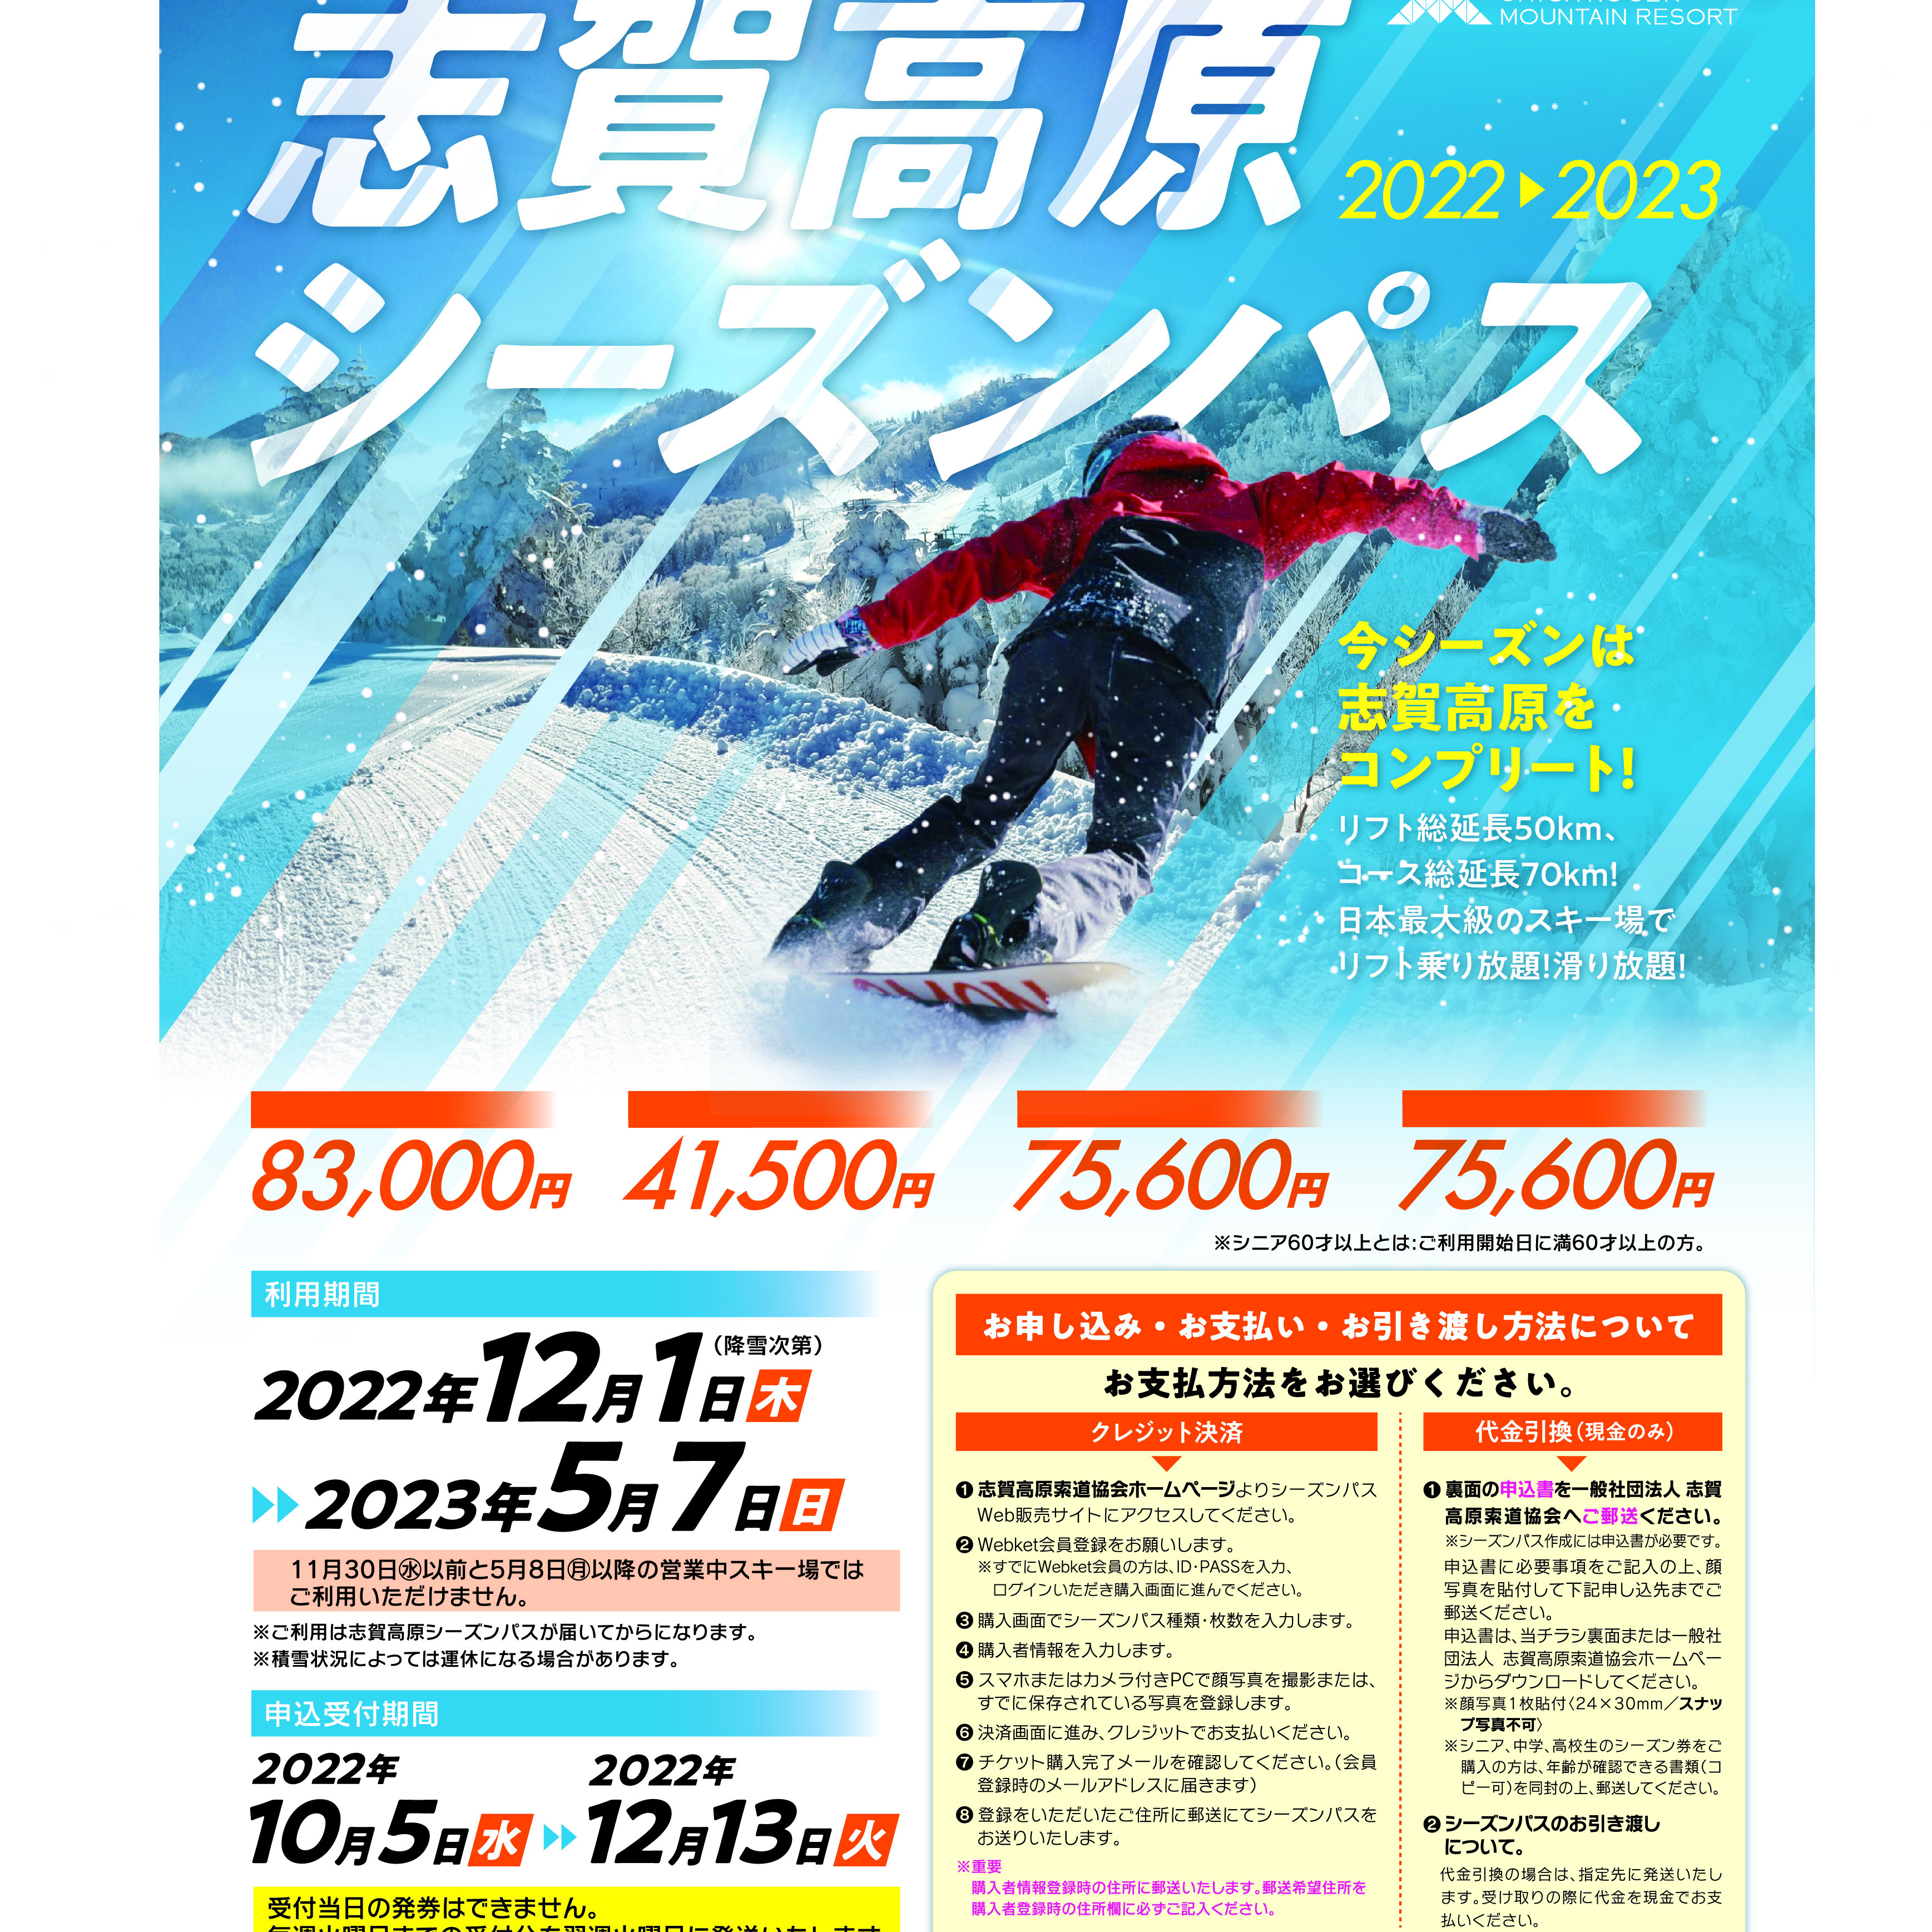 2022-23 志賀高原シーズンパス販売開始のお知らせ